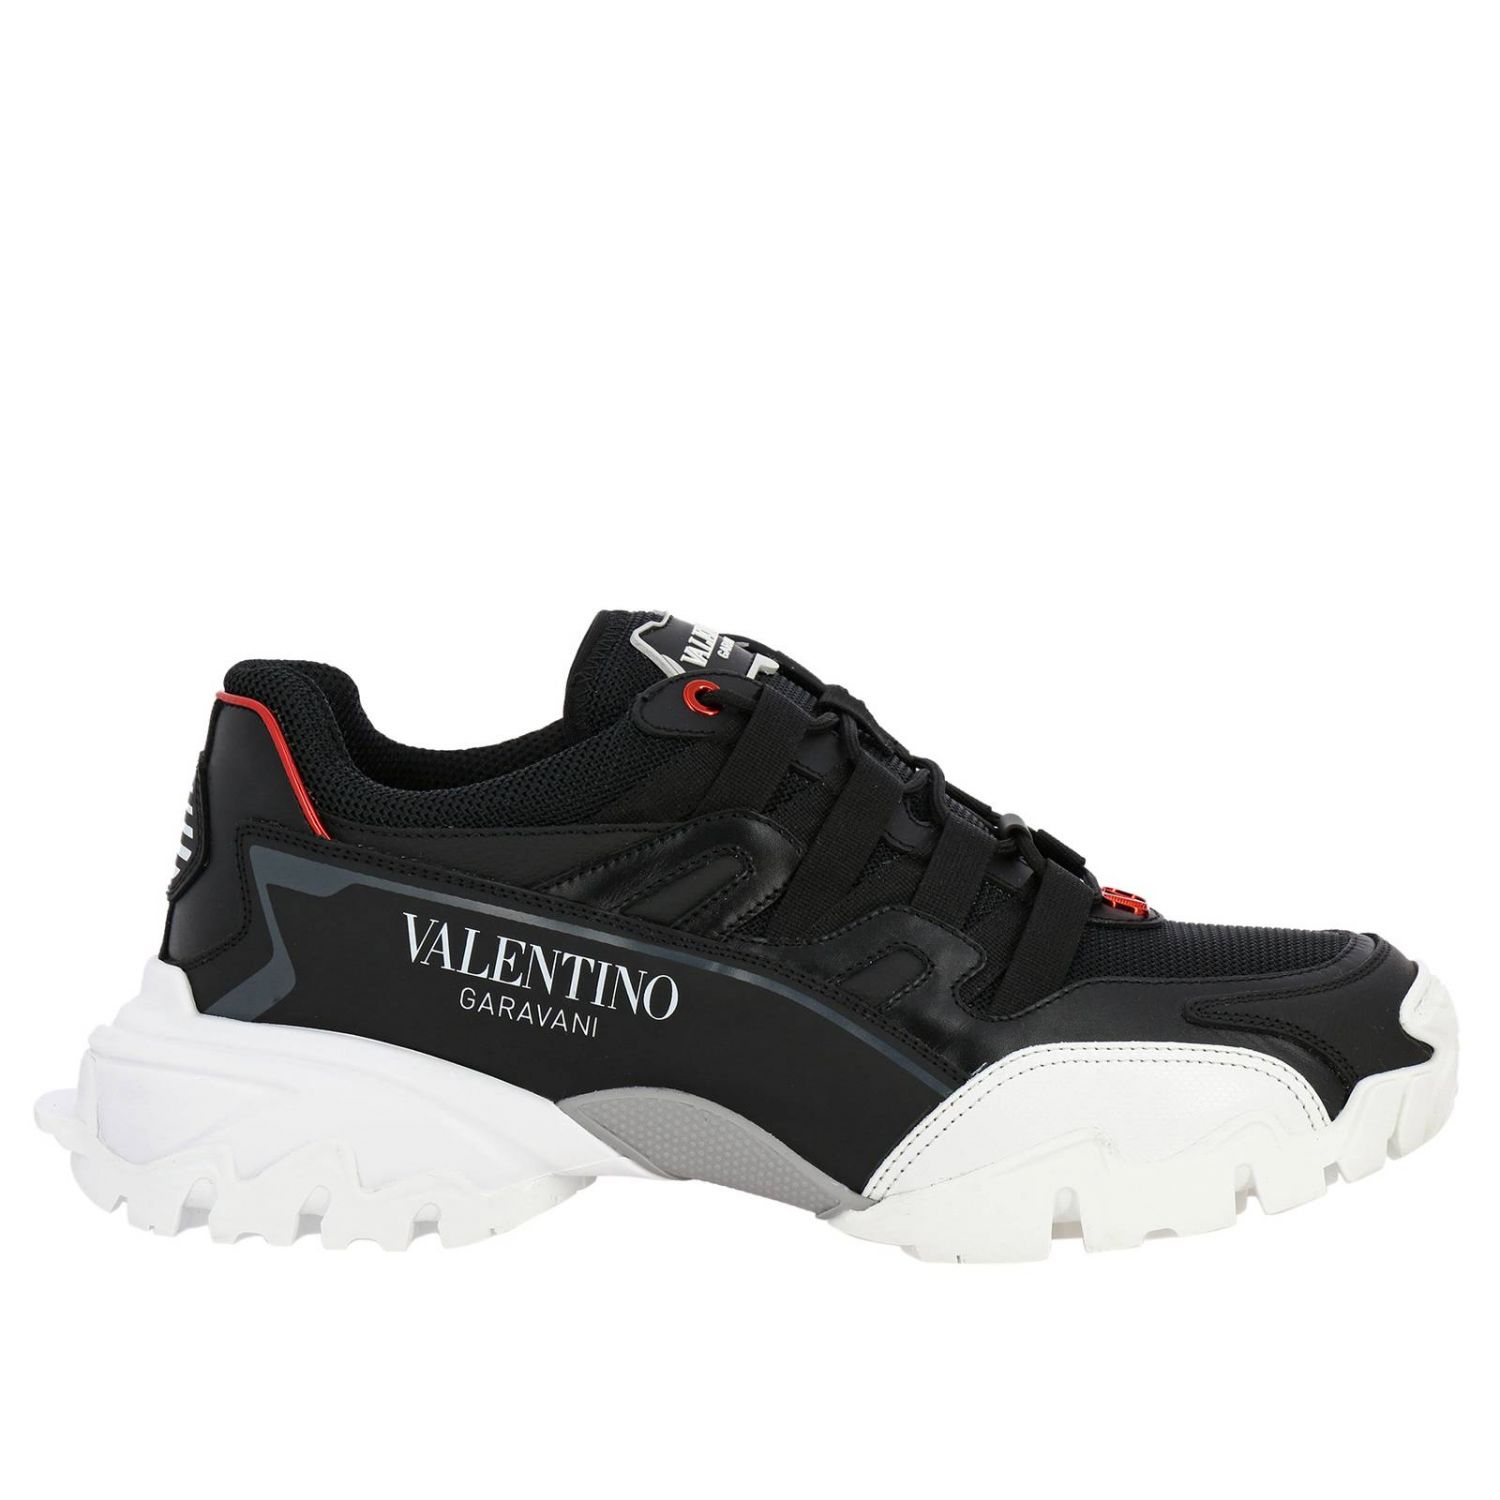 Buy > valentino garavani men shoes > in stock